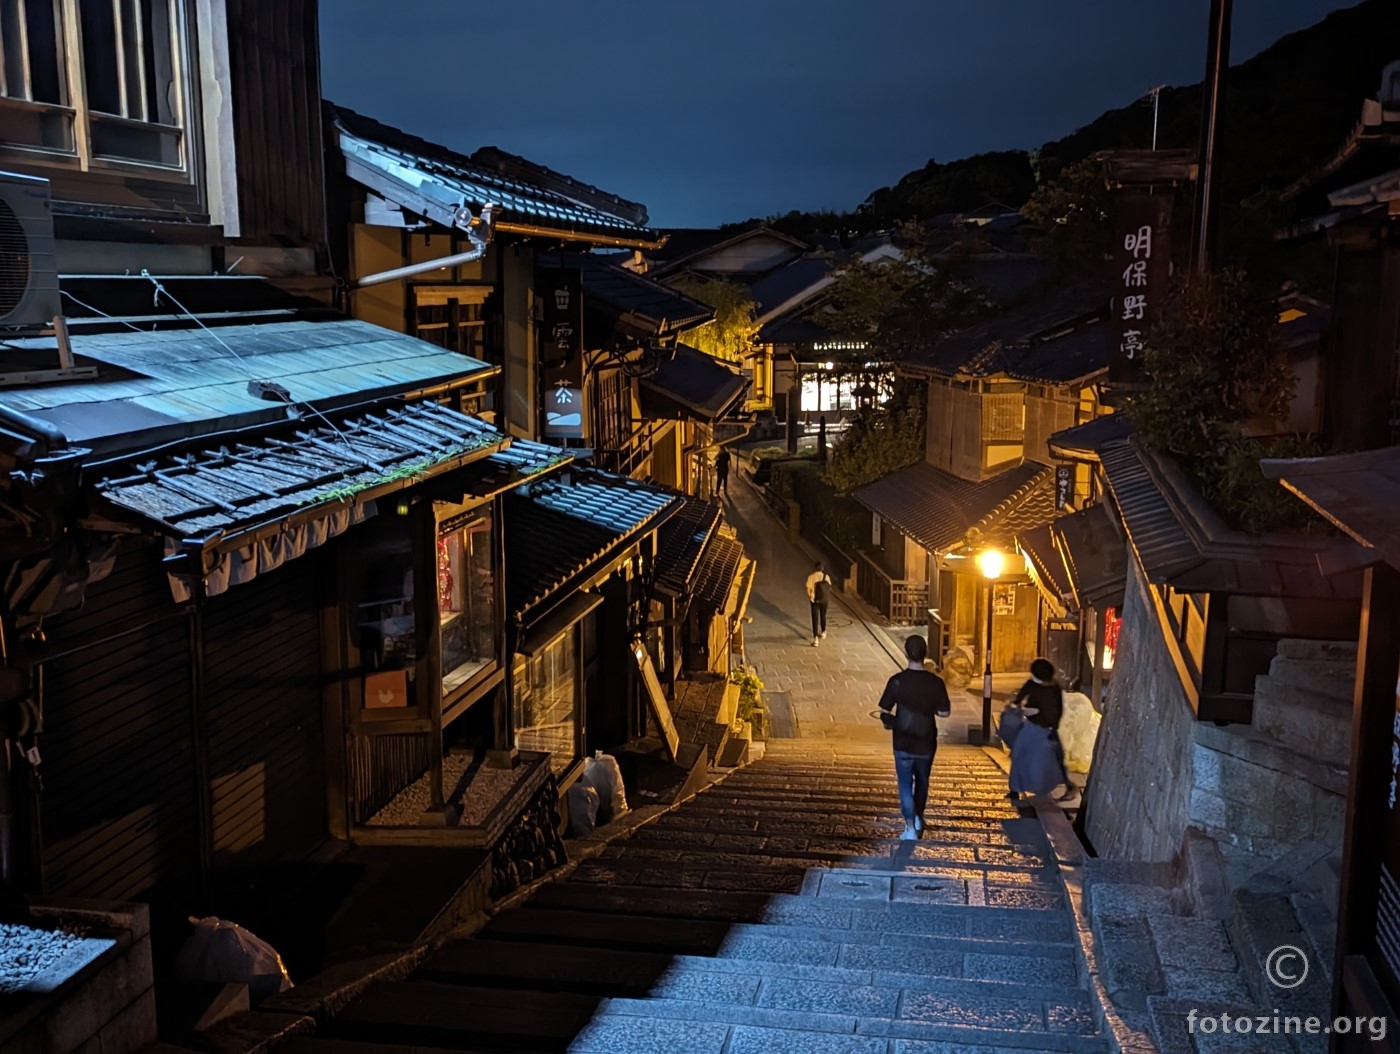 Night in Kiyomizu